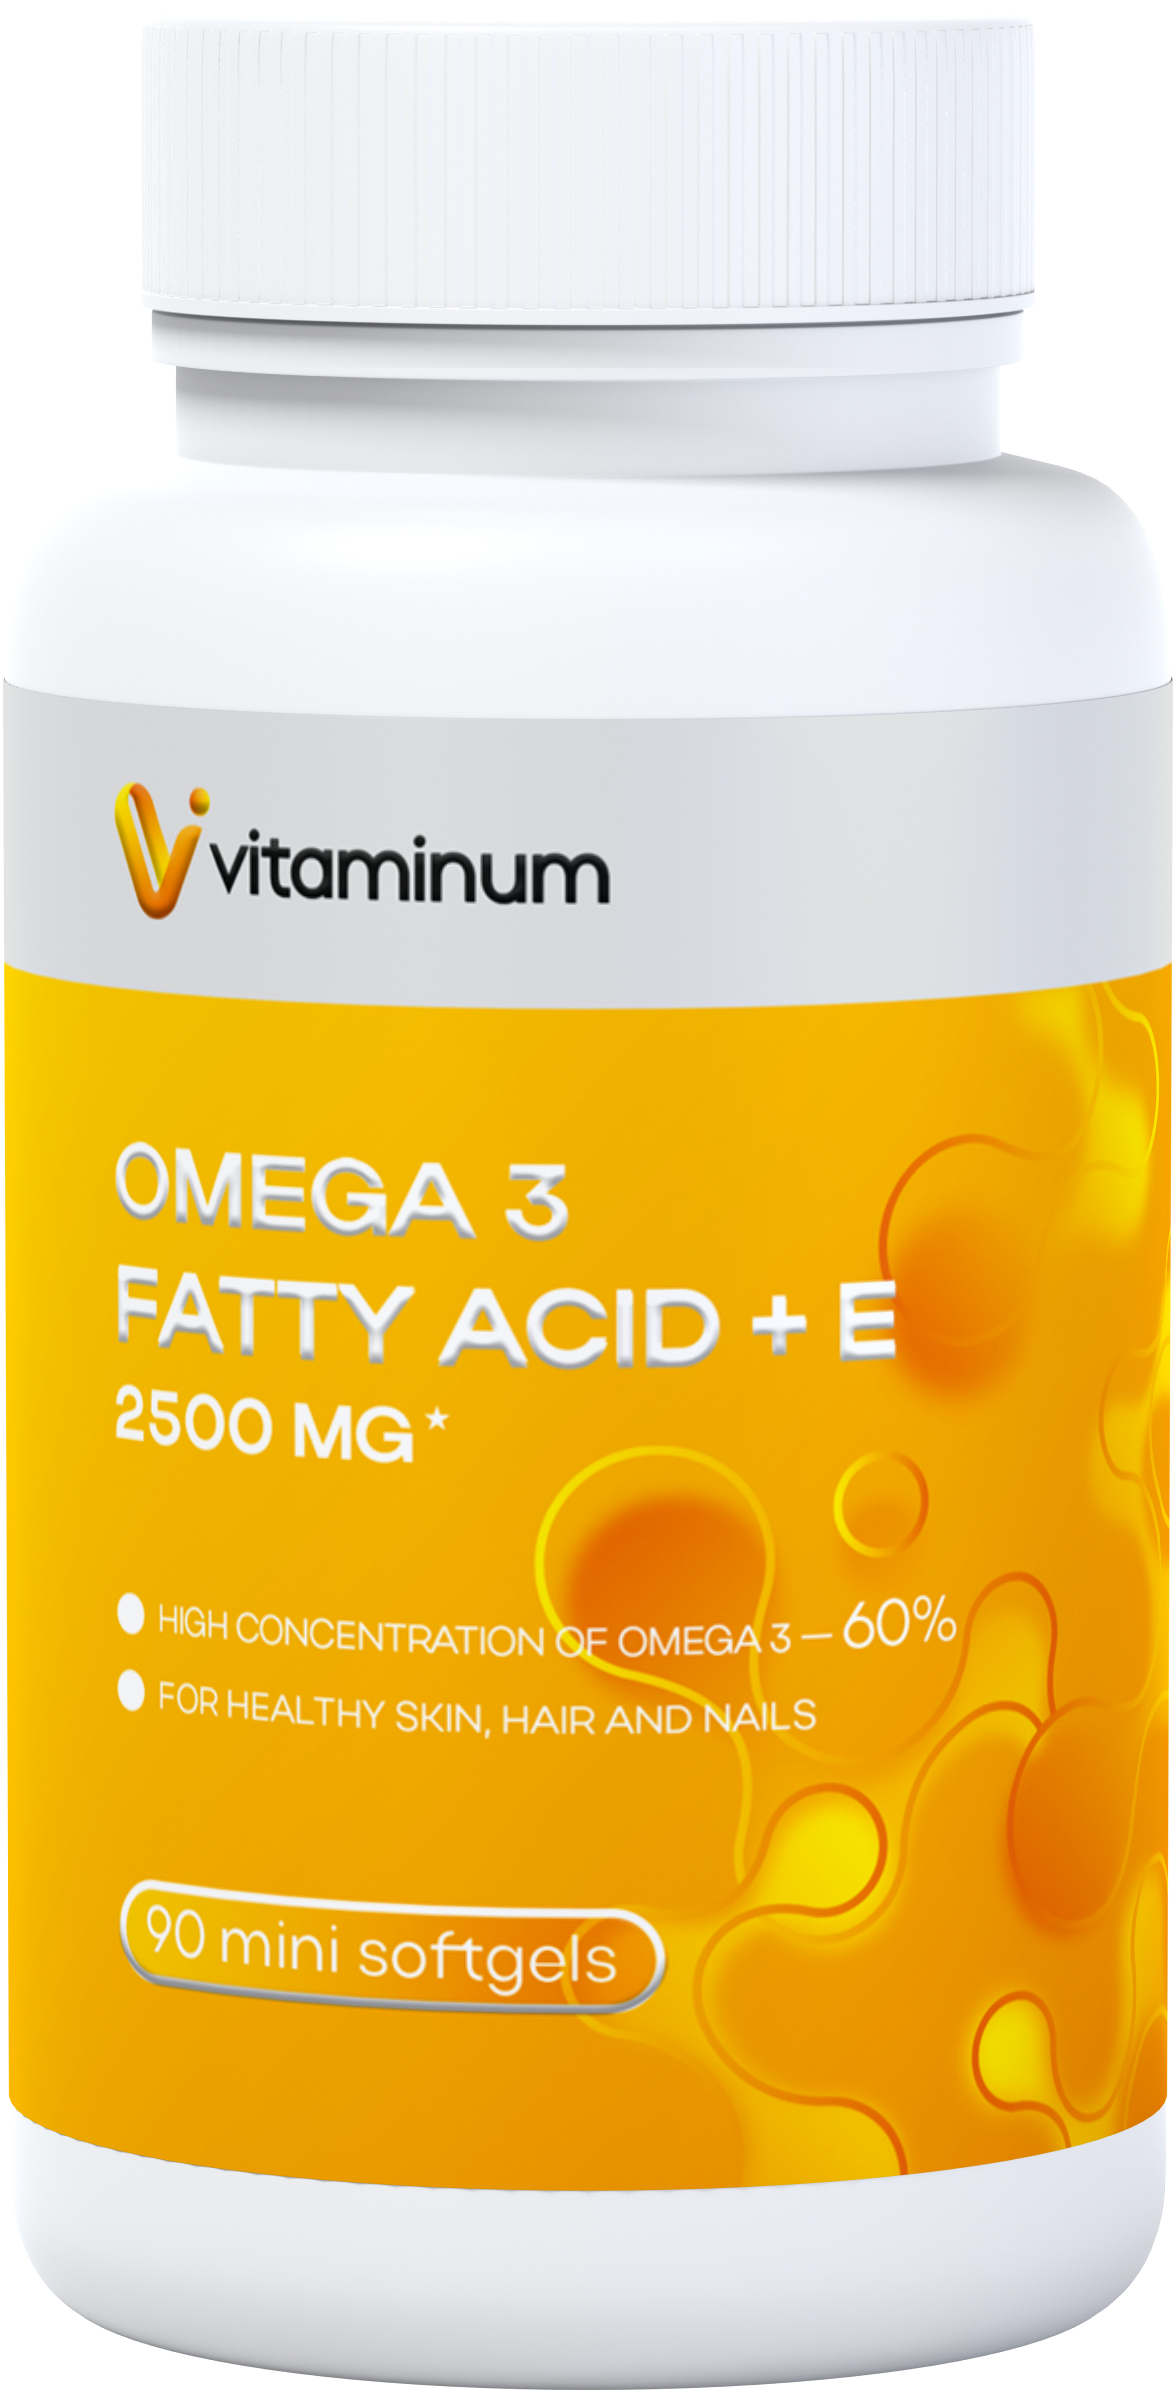  Vitaminum ОМЕГА 3 60% + витамин Е (2500 MG*) 90 капсул 700 мг   в Сызрани